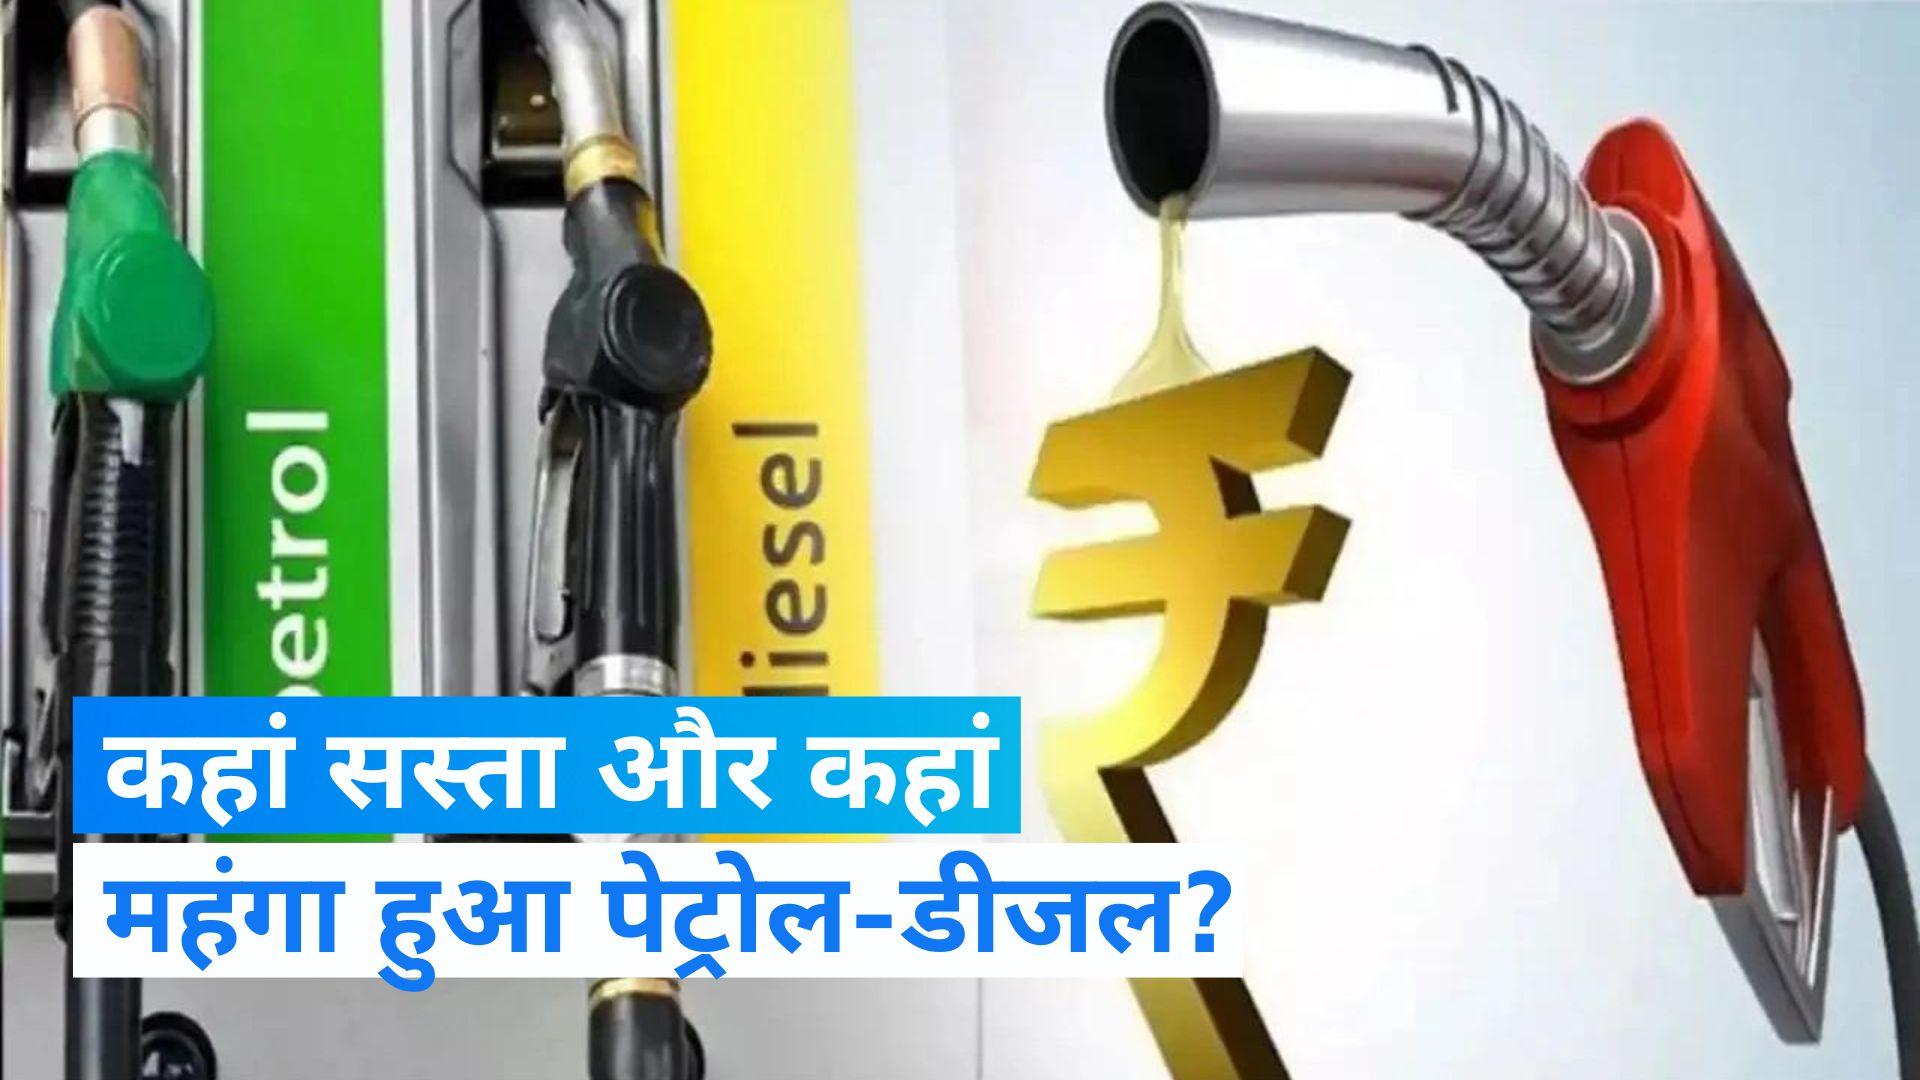 Petrol-Diesel Price: आम आदमी की टूटी कमर, अचानक बढ़ें पेट्रोल-डीजल के भाव, यहाँ देखें पेट्रोल-डीजल की ताजा कीमतें